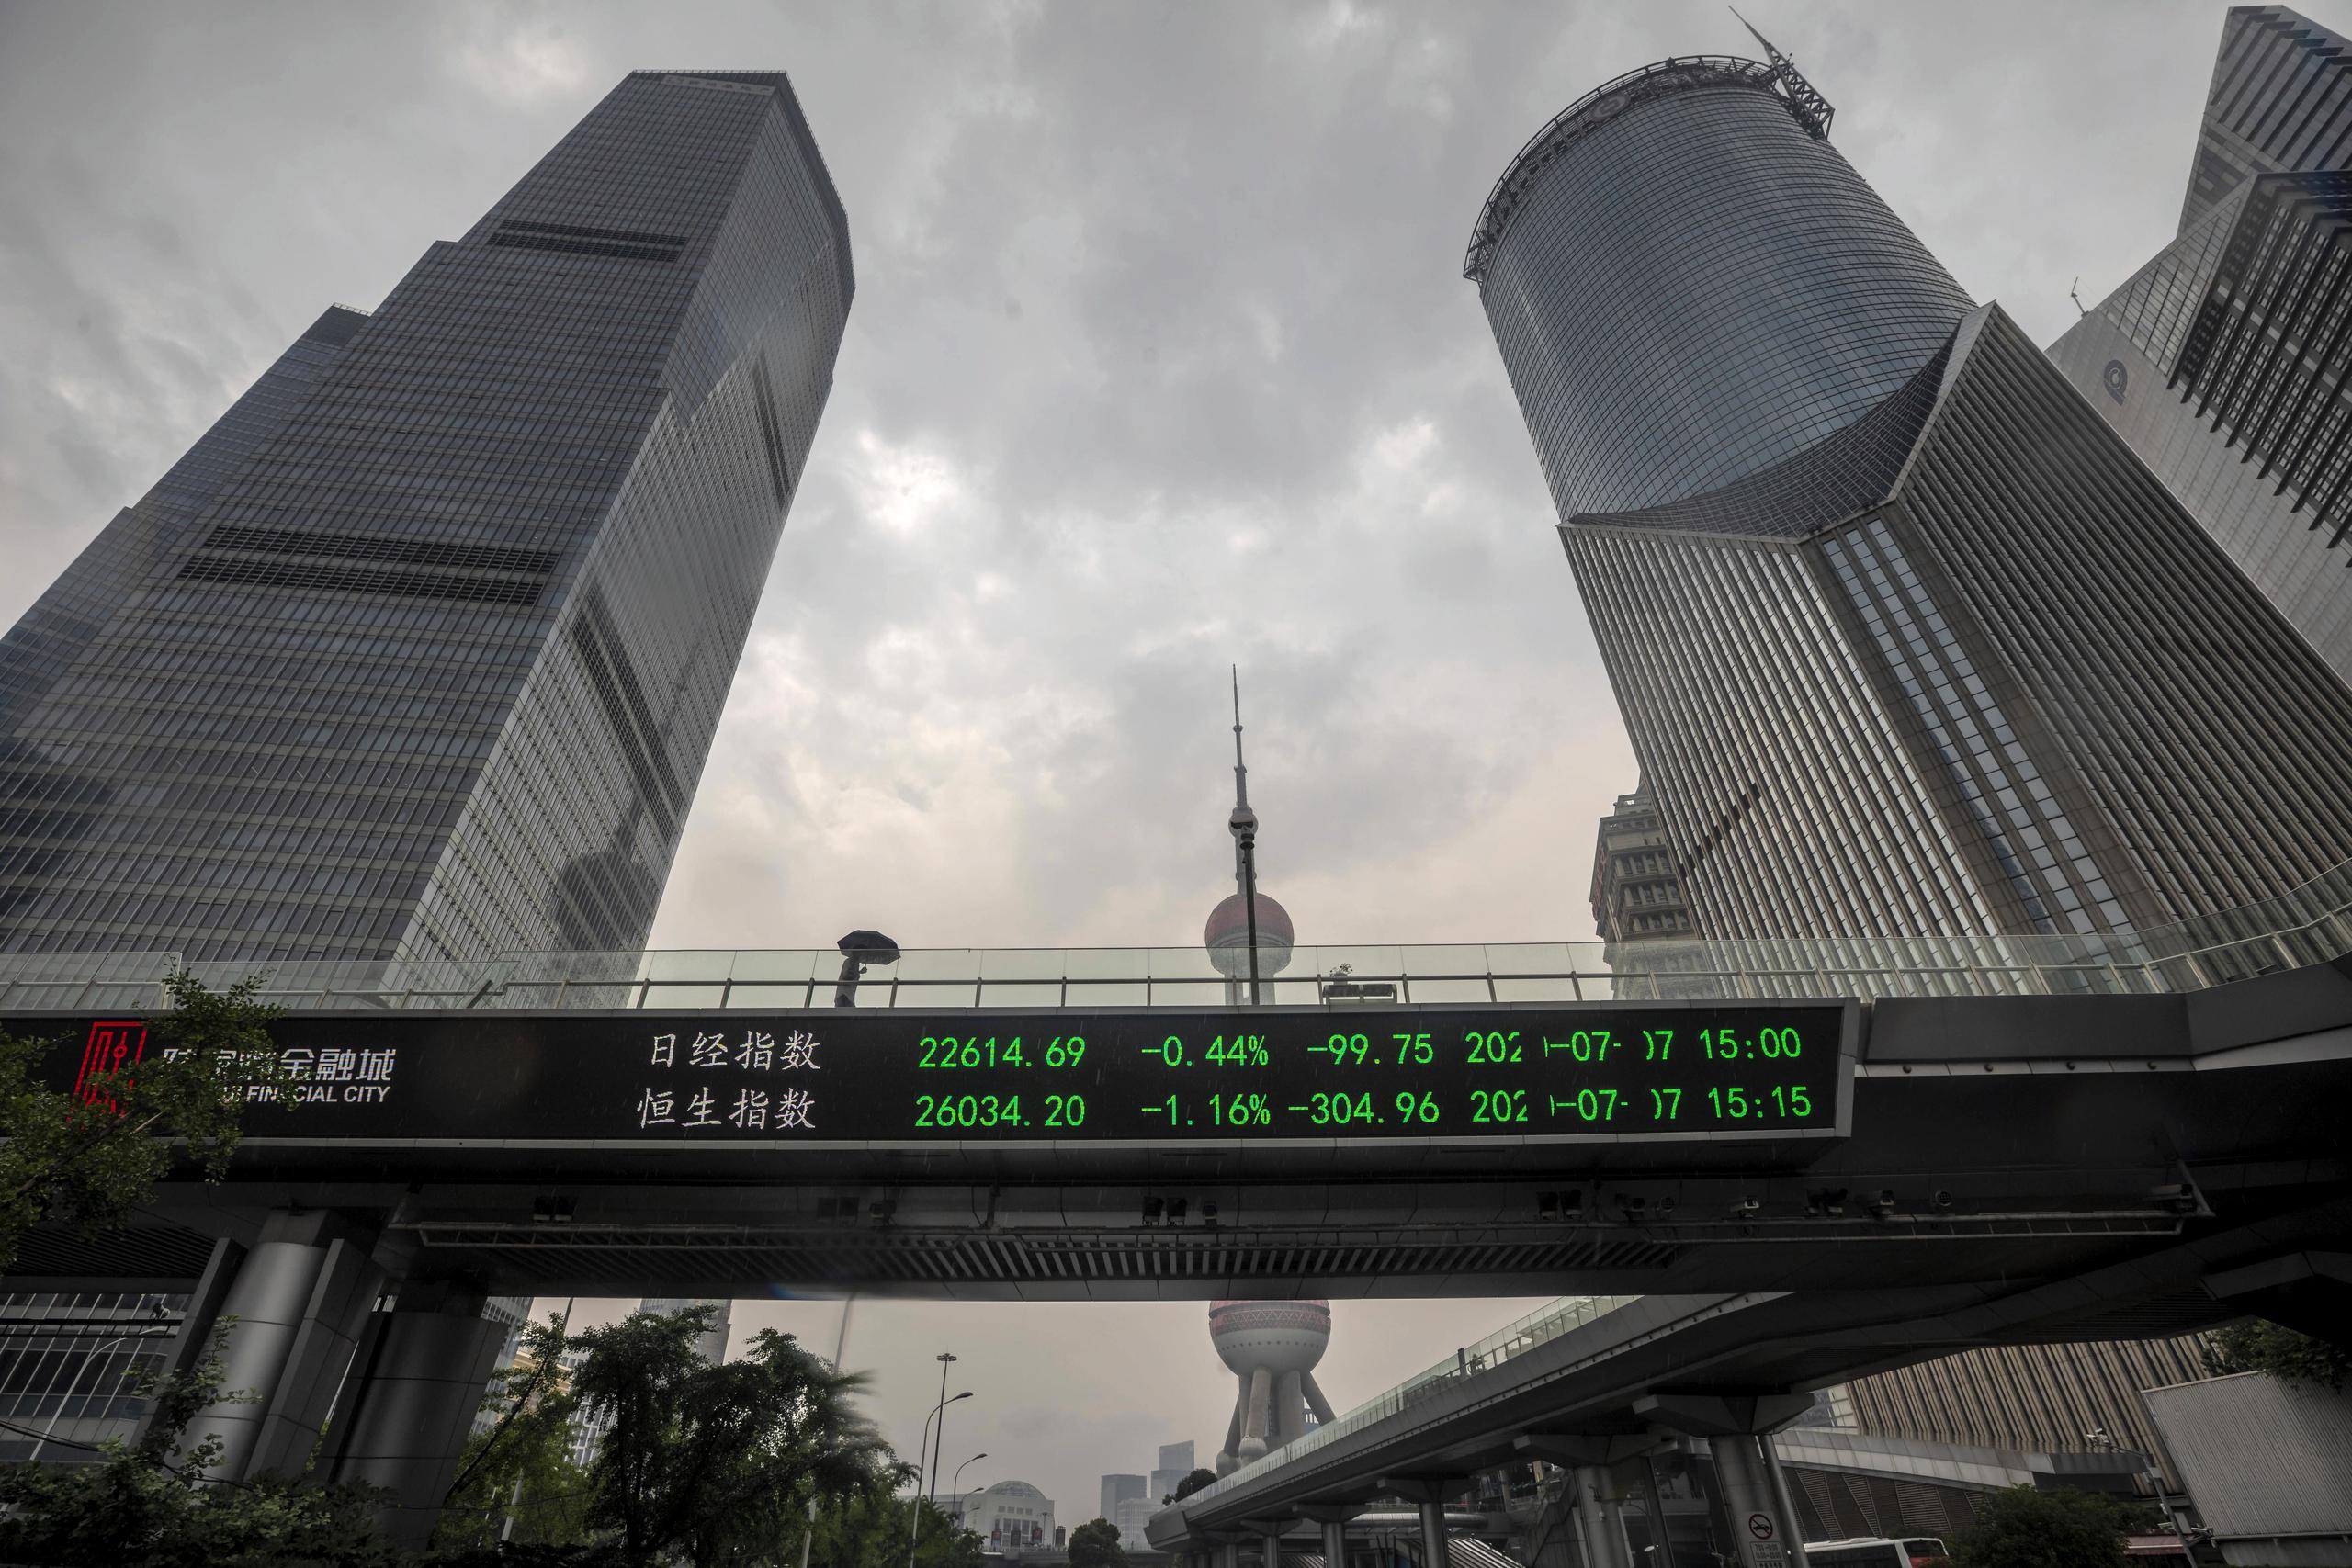 Vista de un puente donde pueden verse las cotizaciones de la Bolsa de Shanghai en dicha localidad, China.